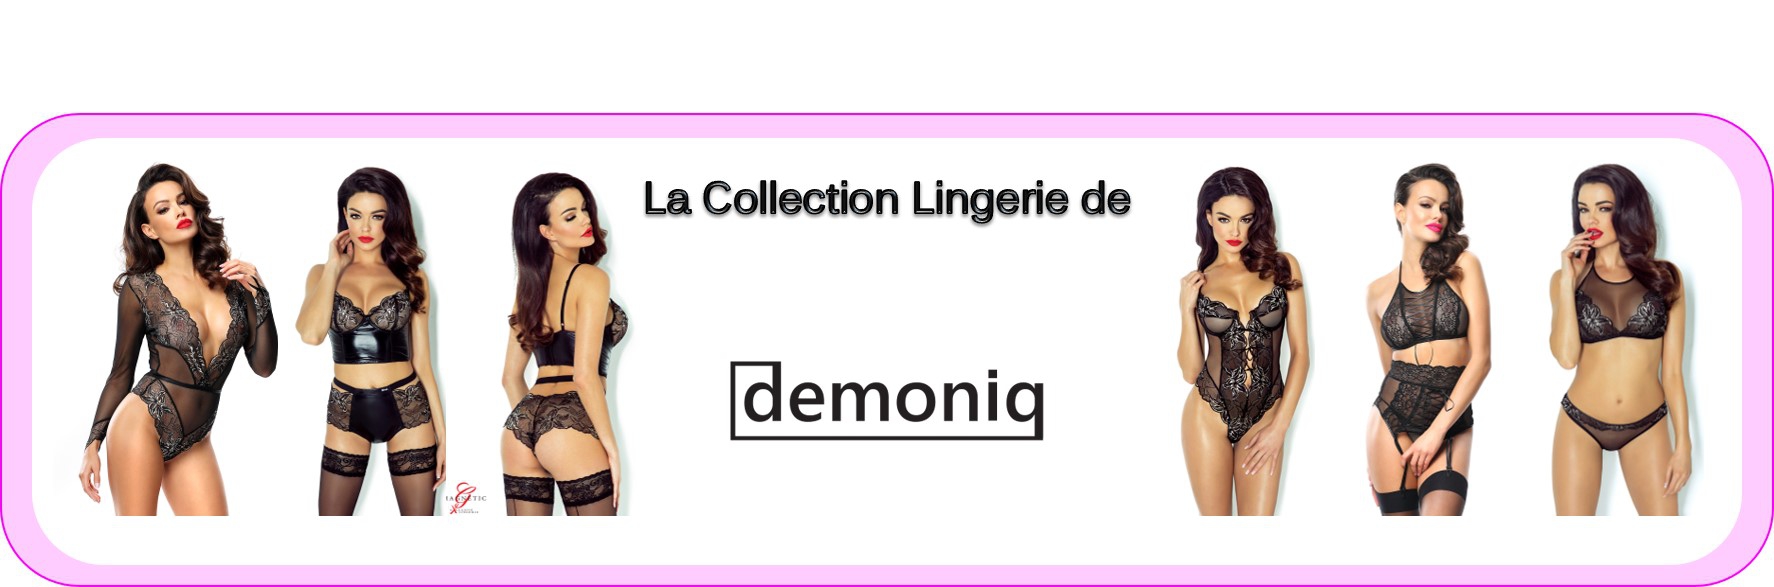 Lingerie Demoniq